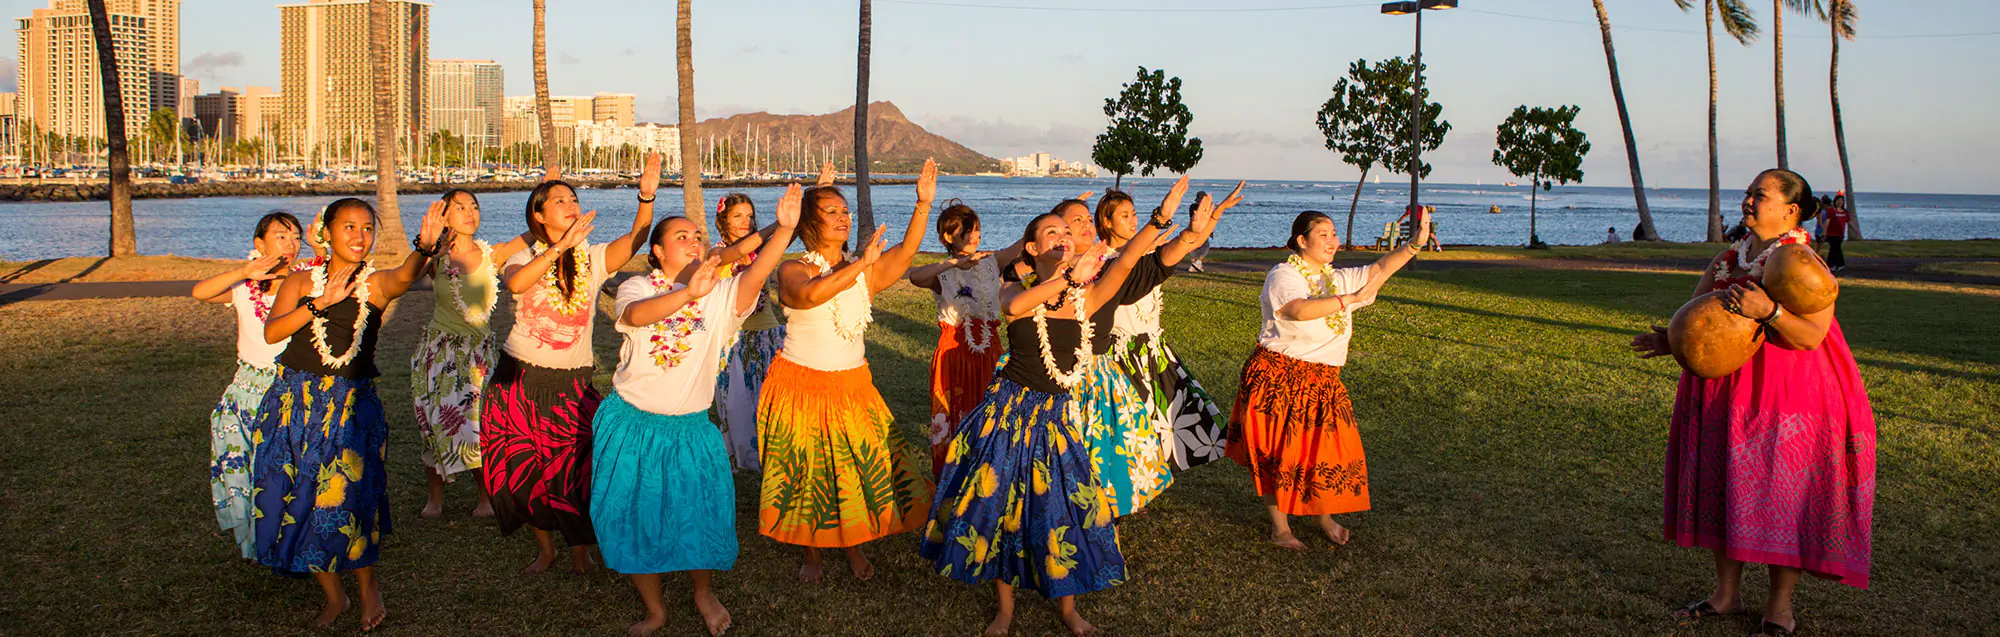 Les programmes de visa de étudier et travailler Global Village Honolulu